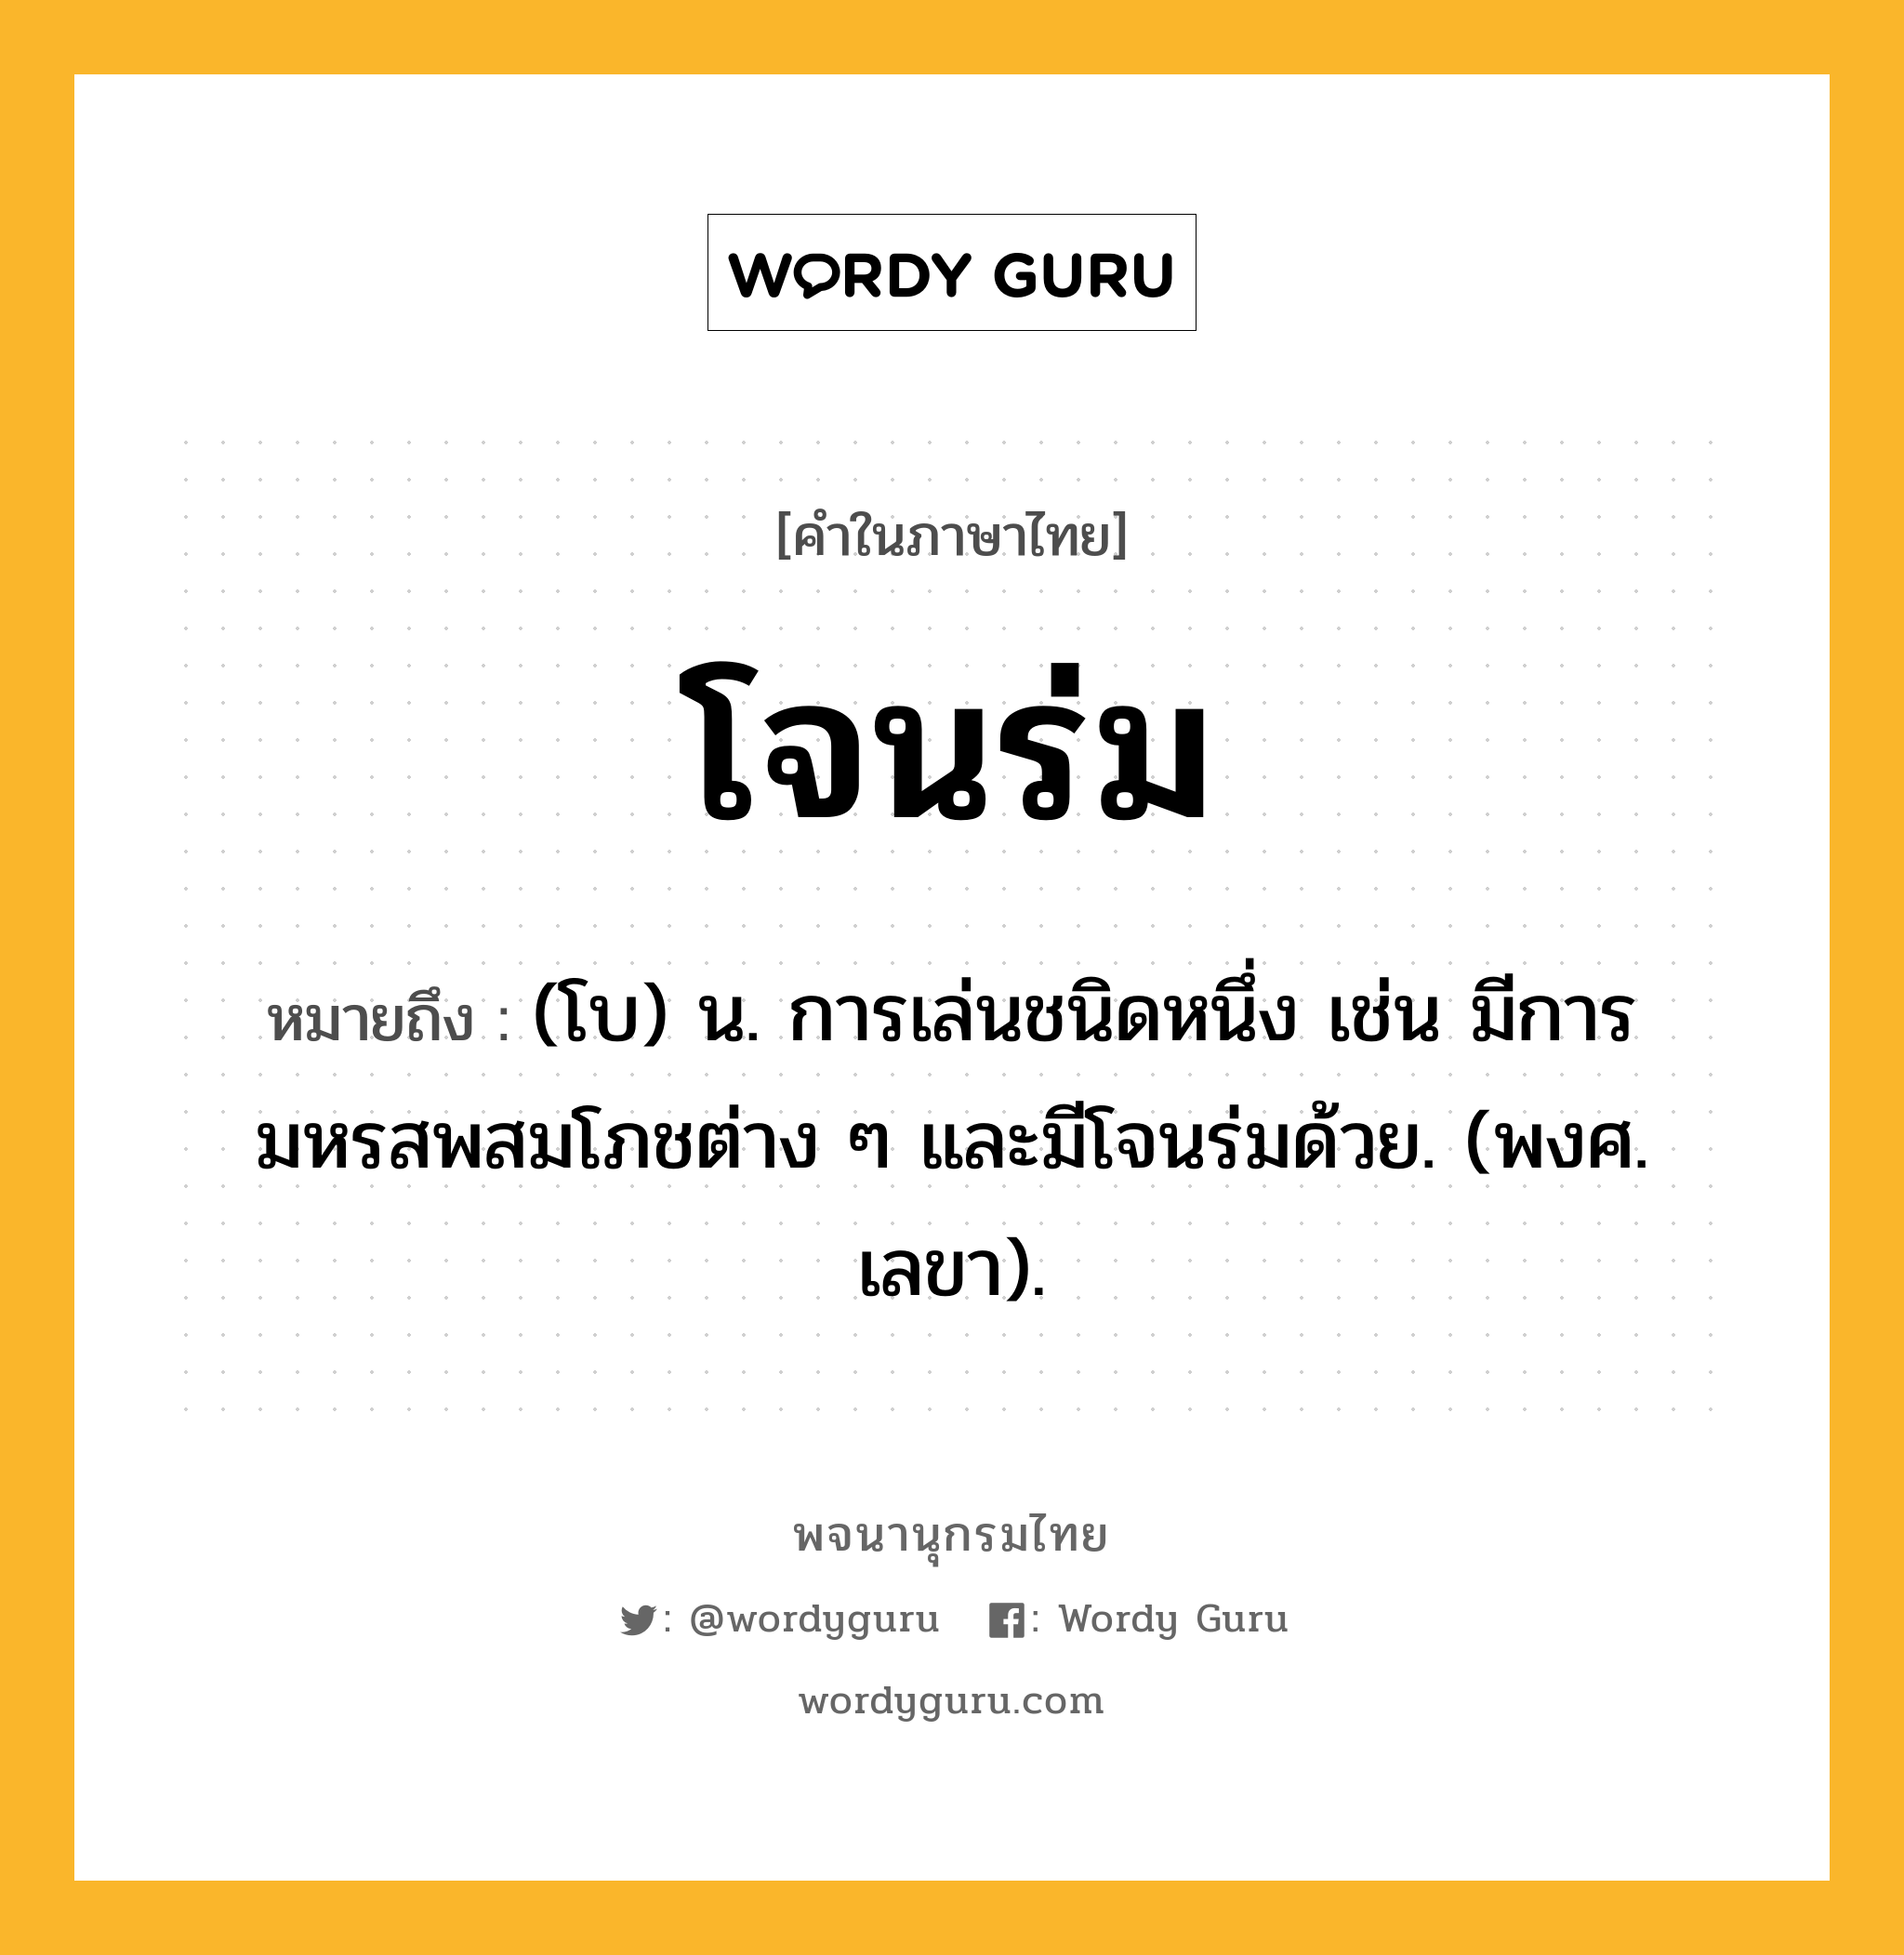 โจนร่ม ความหมาย หมายถึงอะไร?, คำในภาษาไทย โจนร่ม หมายถึง (โบ) น. การเล่นชนิดหนึ่ง เช่น มีการมหรสพสมโภชต่าง ๆ และมีโจนร่มด้วย. (พงศ. เลขา).